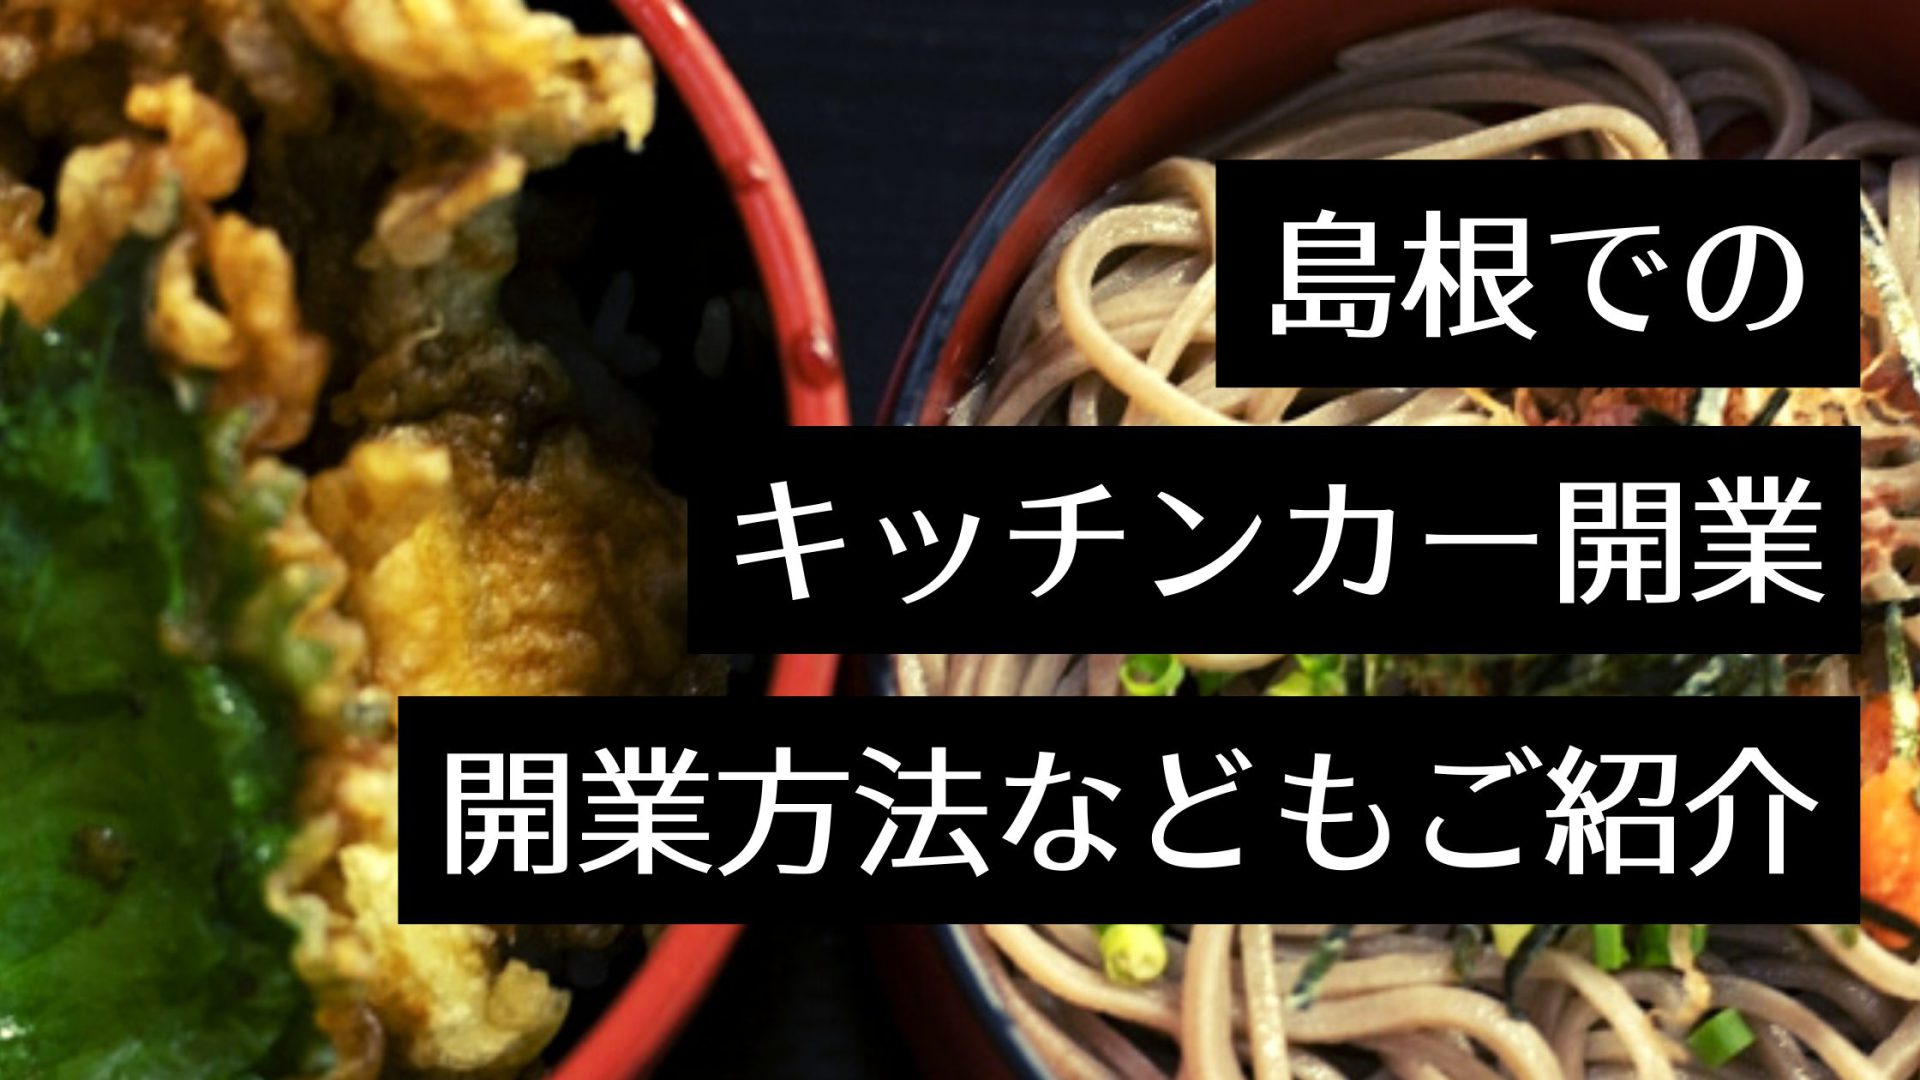 島根県でキッチンカーを開業するなら？人気のグルメや手続きについても解説します